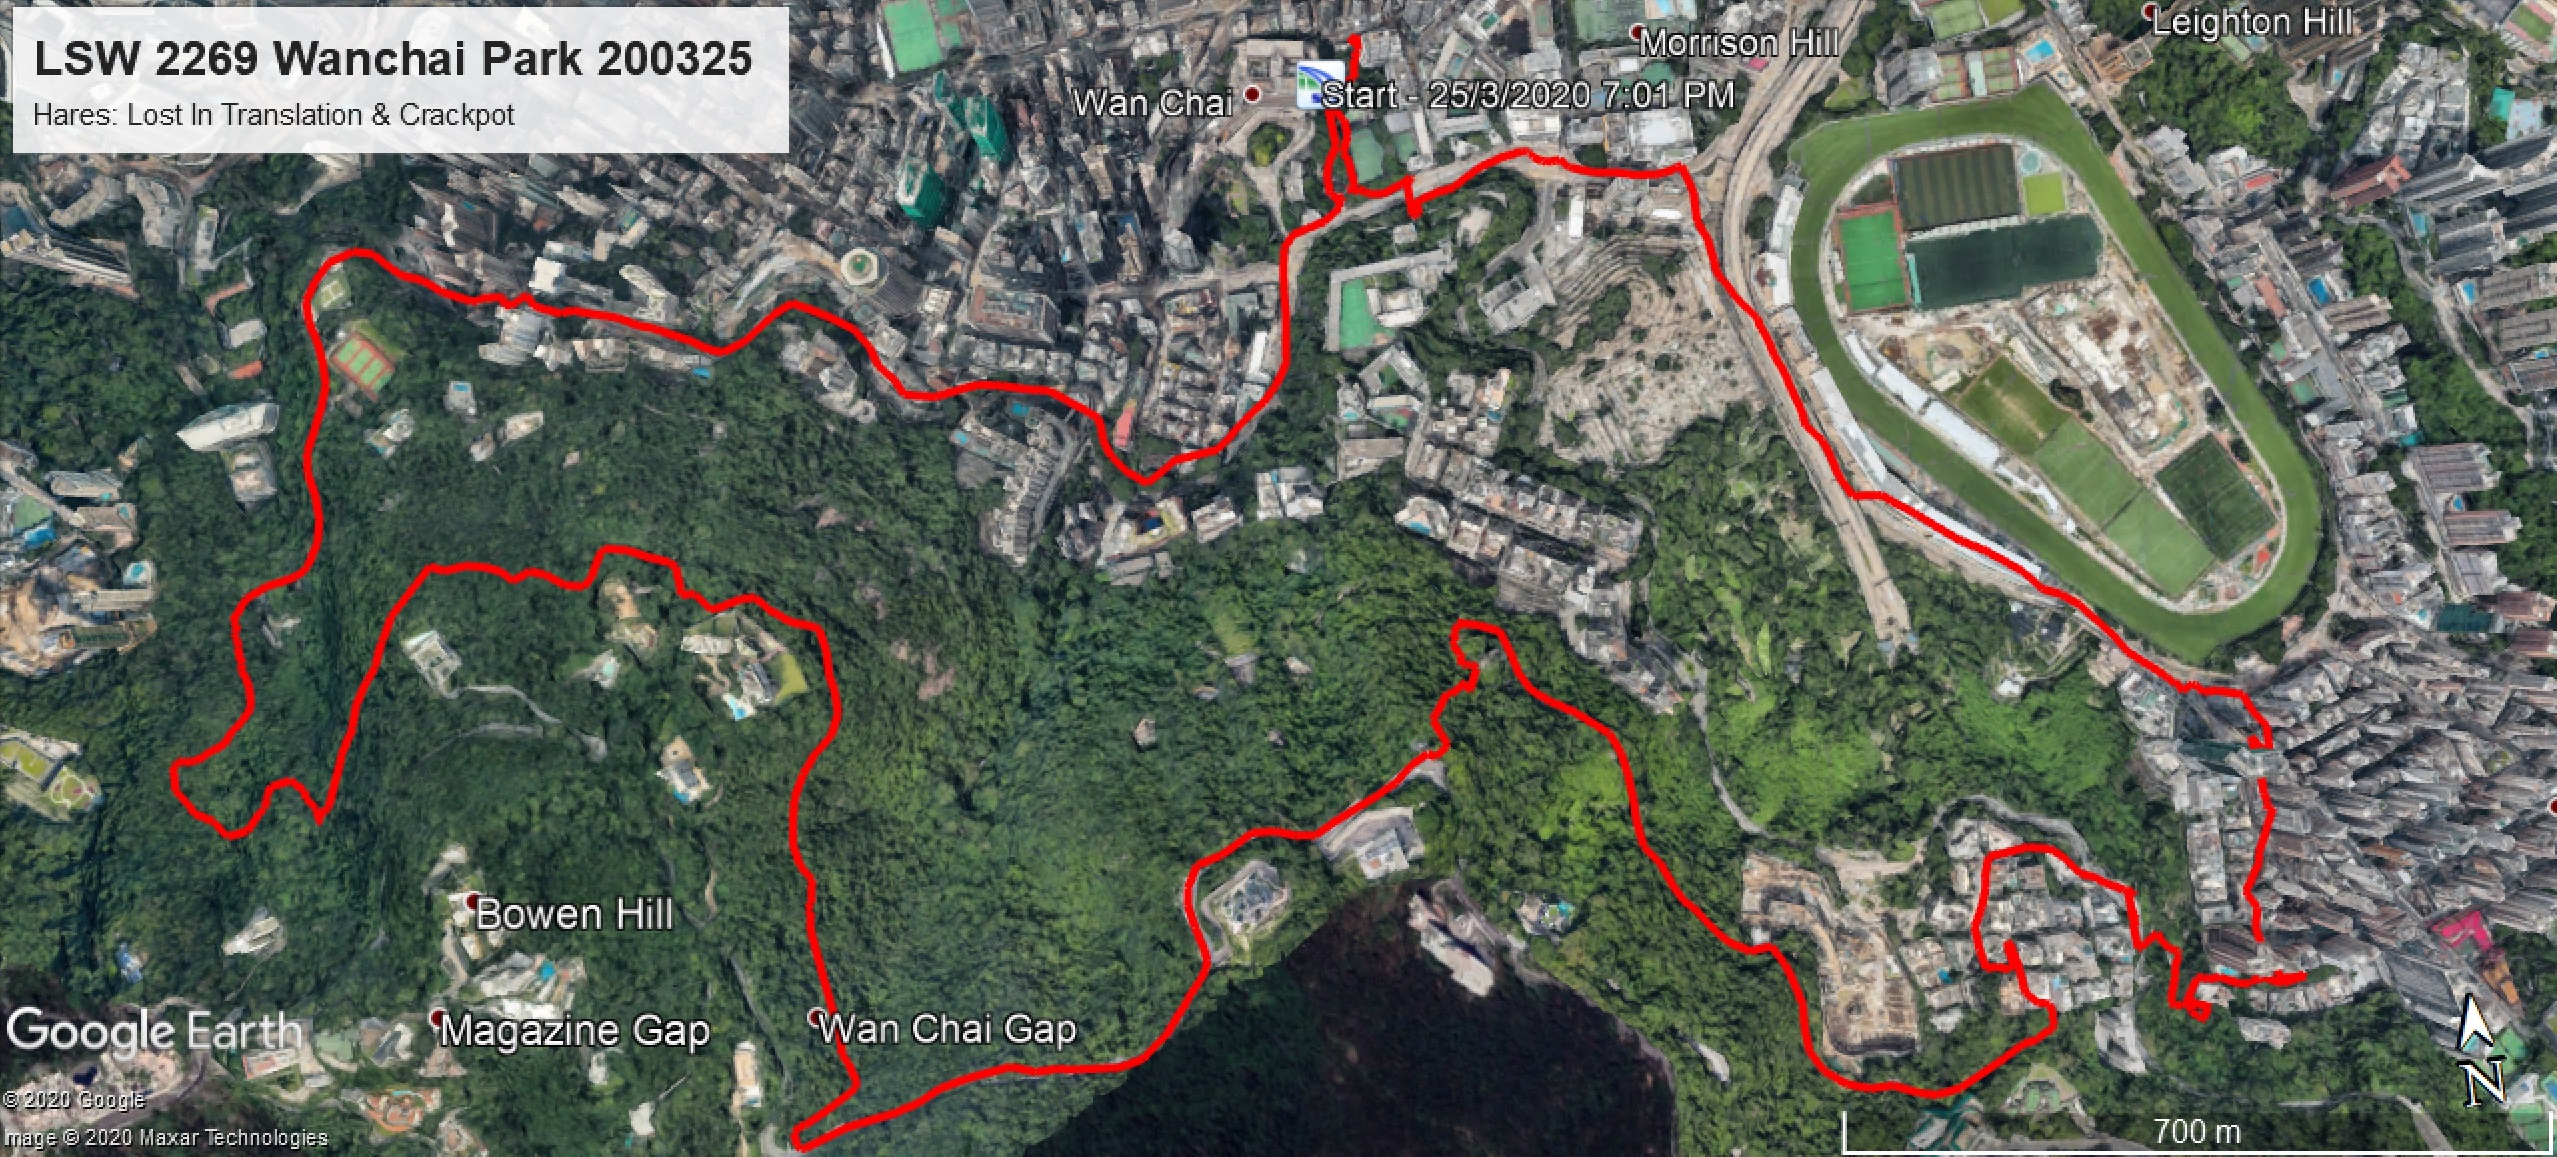 Wanchai Park 200325 7.82km 72mins